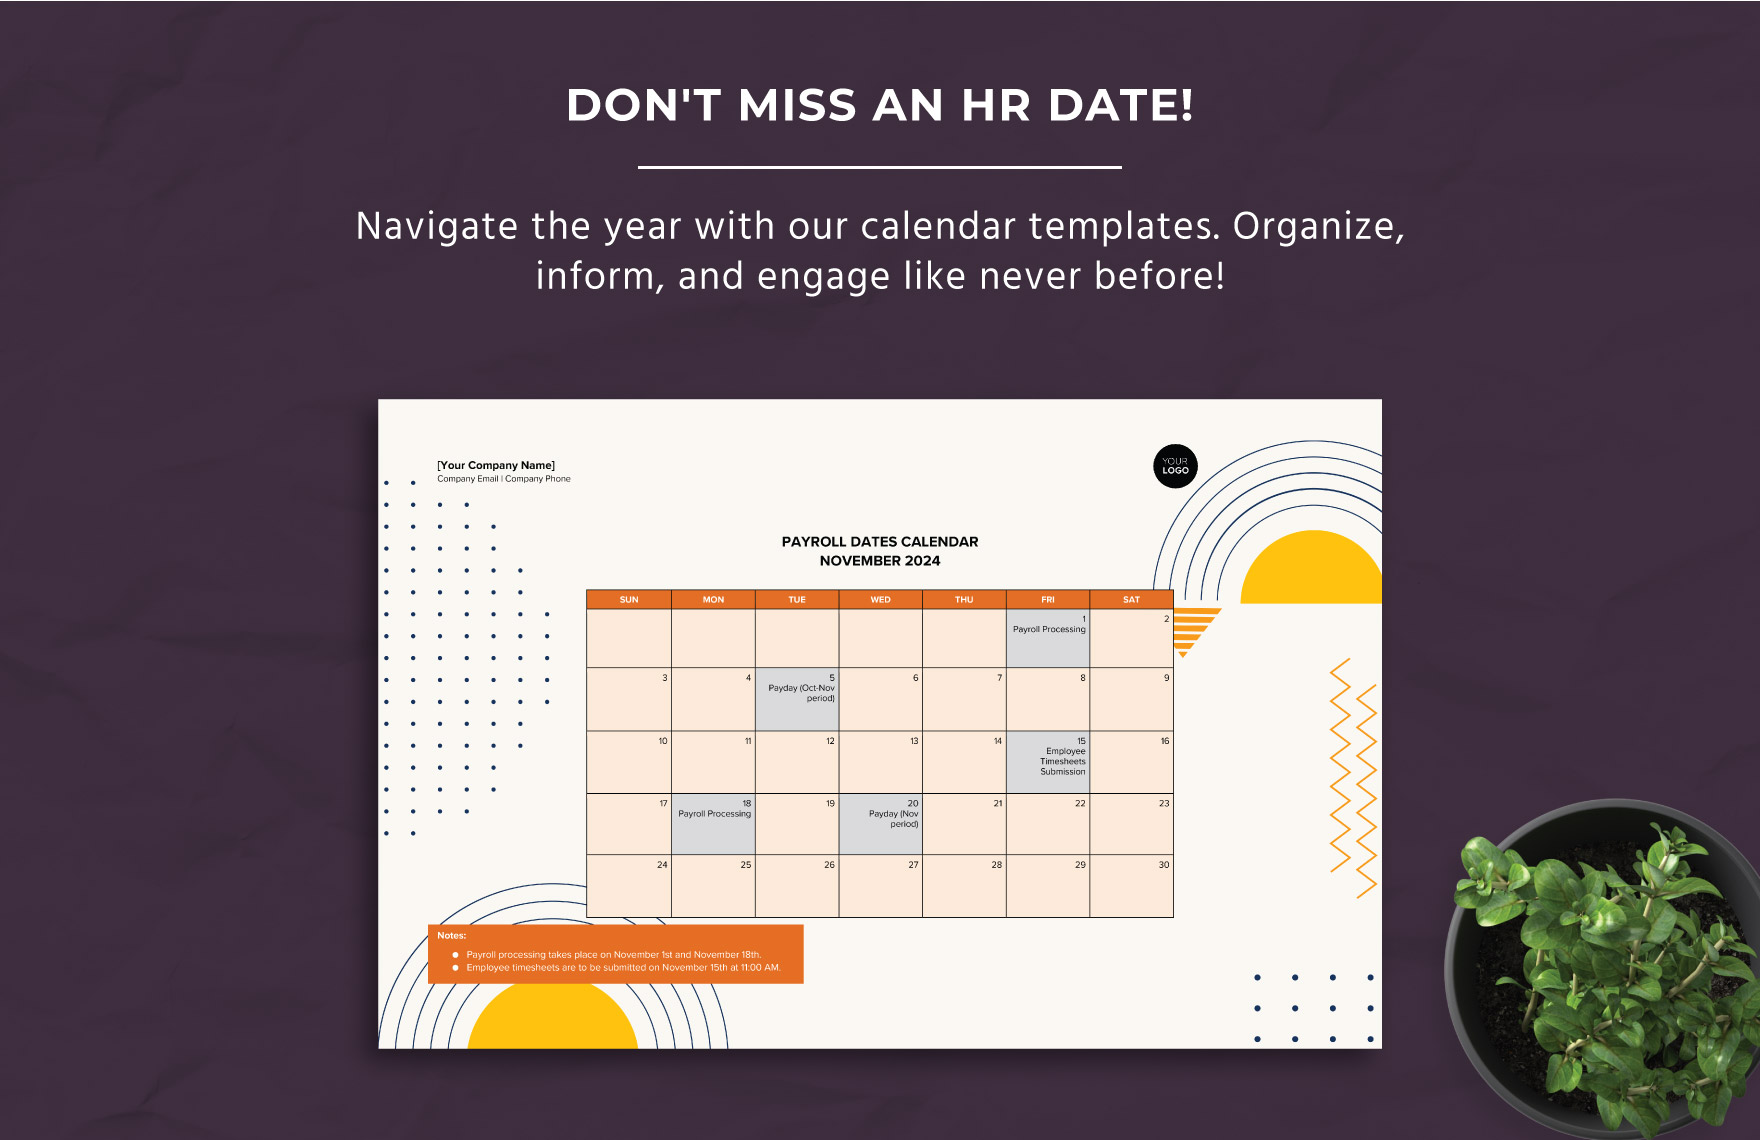 Payroll Dates Calendar Template